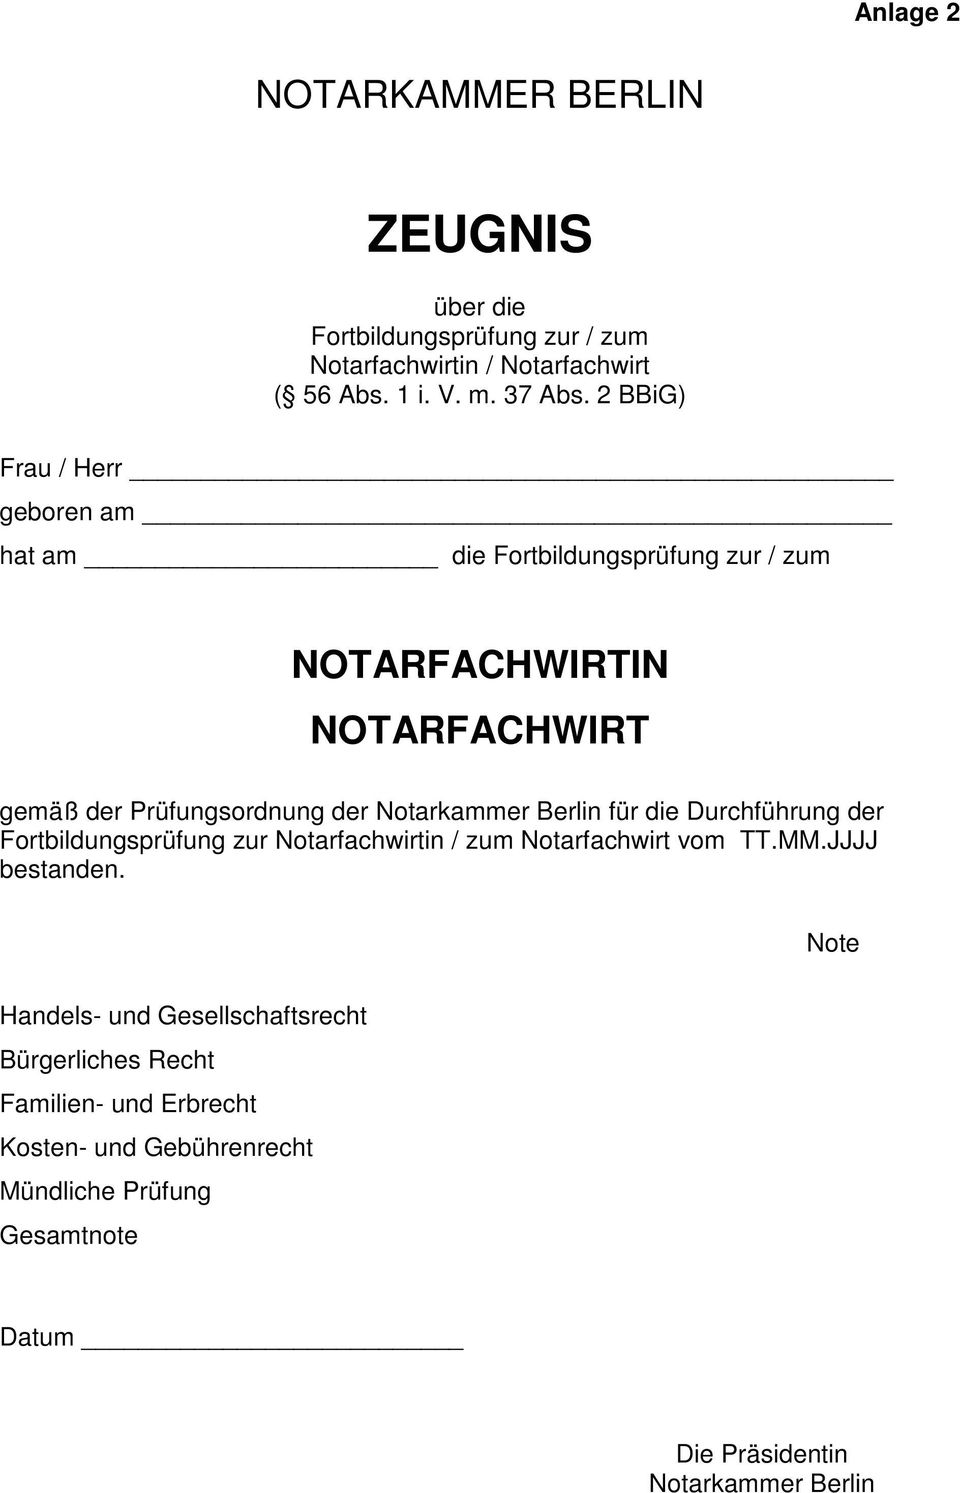 Notarkammer Berlin für die Durchführung der Fortbildungsprüfung zur Notarfachwirtin / zum Notarfachwirt vom TT.MM.JJJJ bestanden.